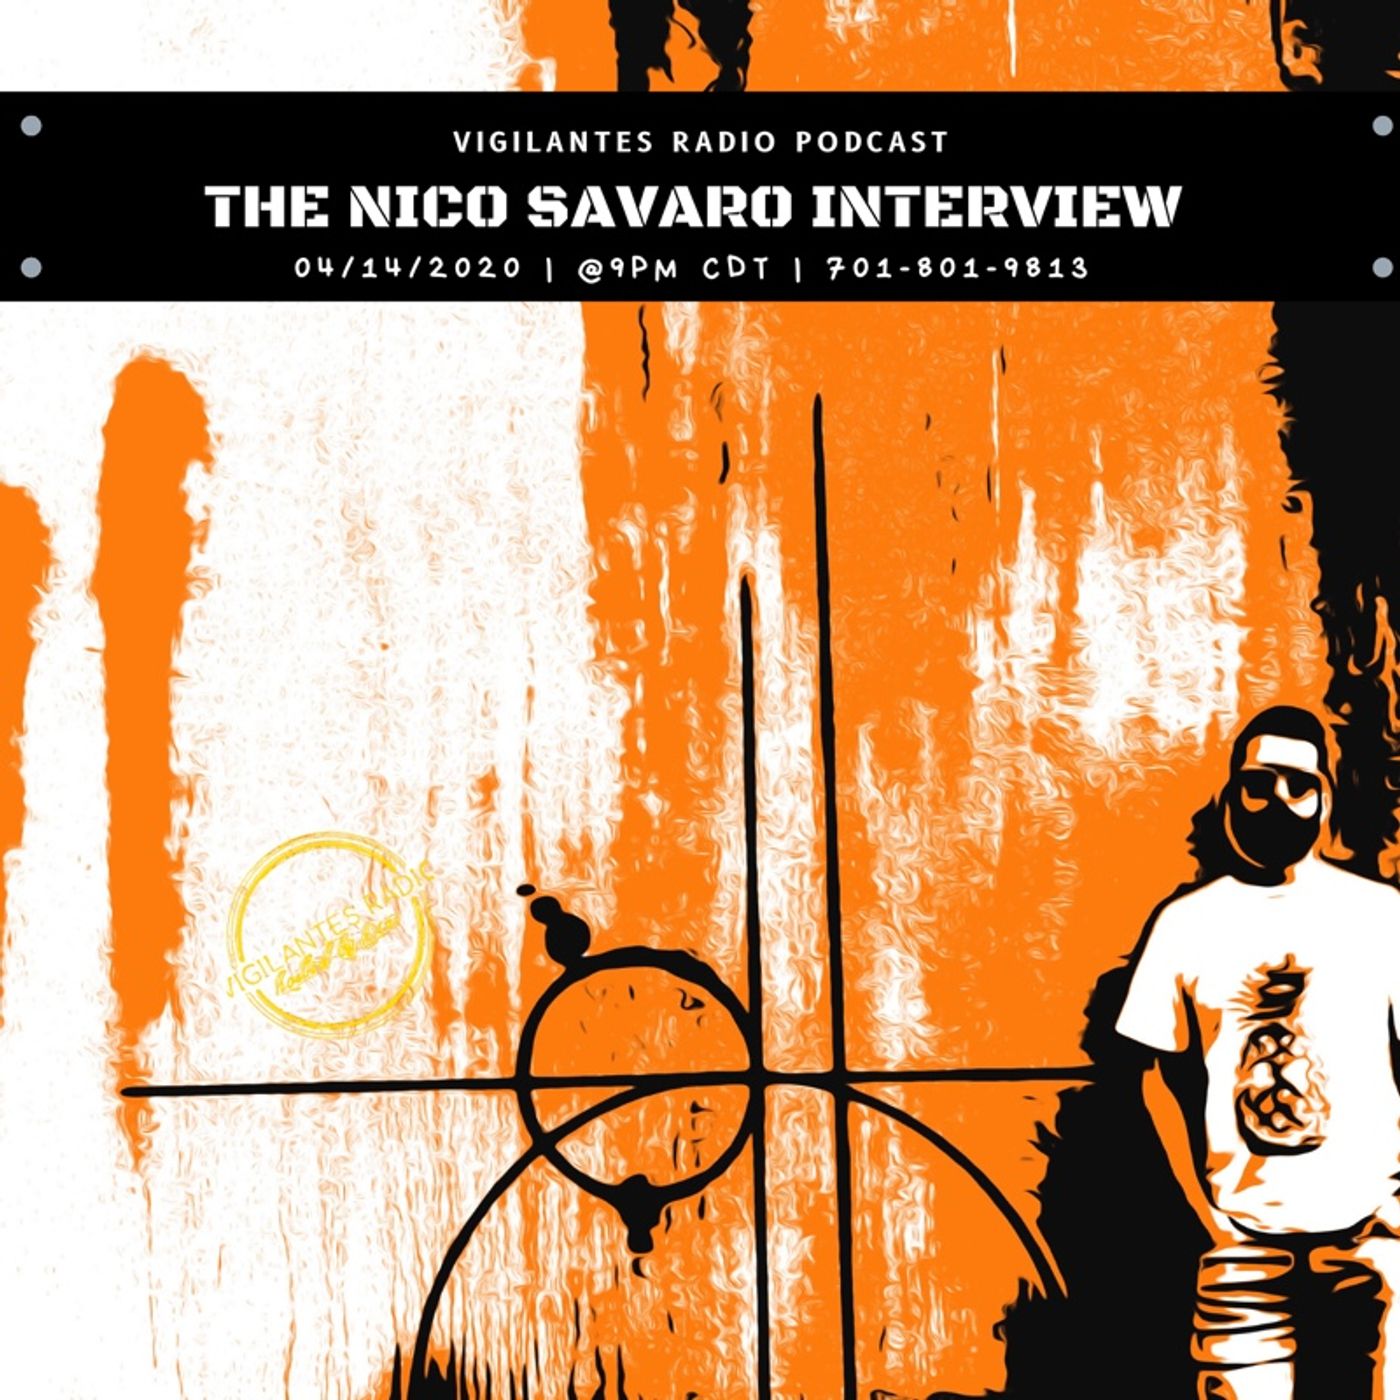 The Nico Savaro Interview. Image